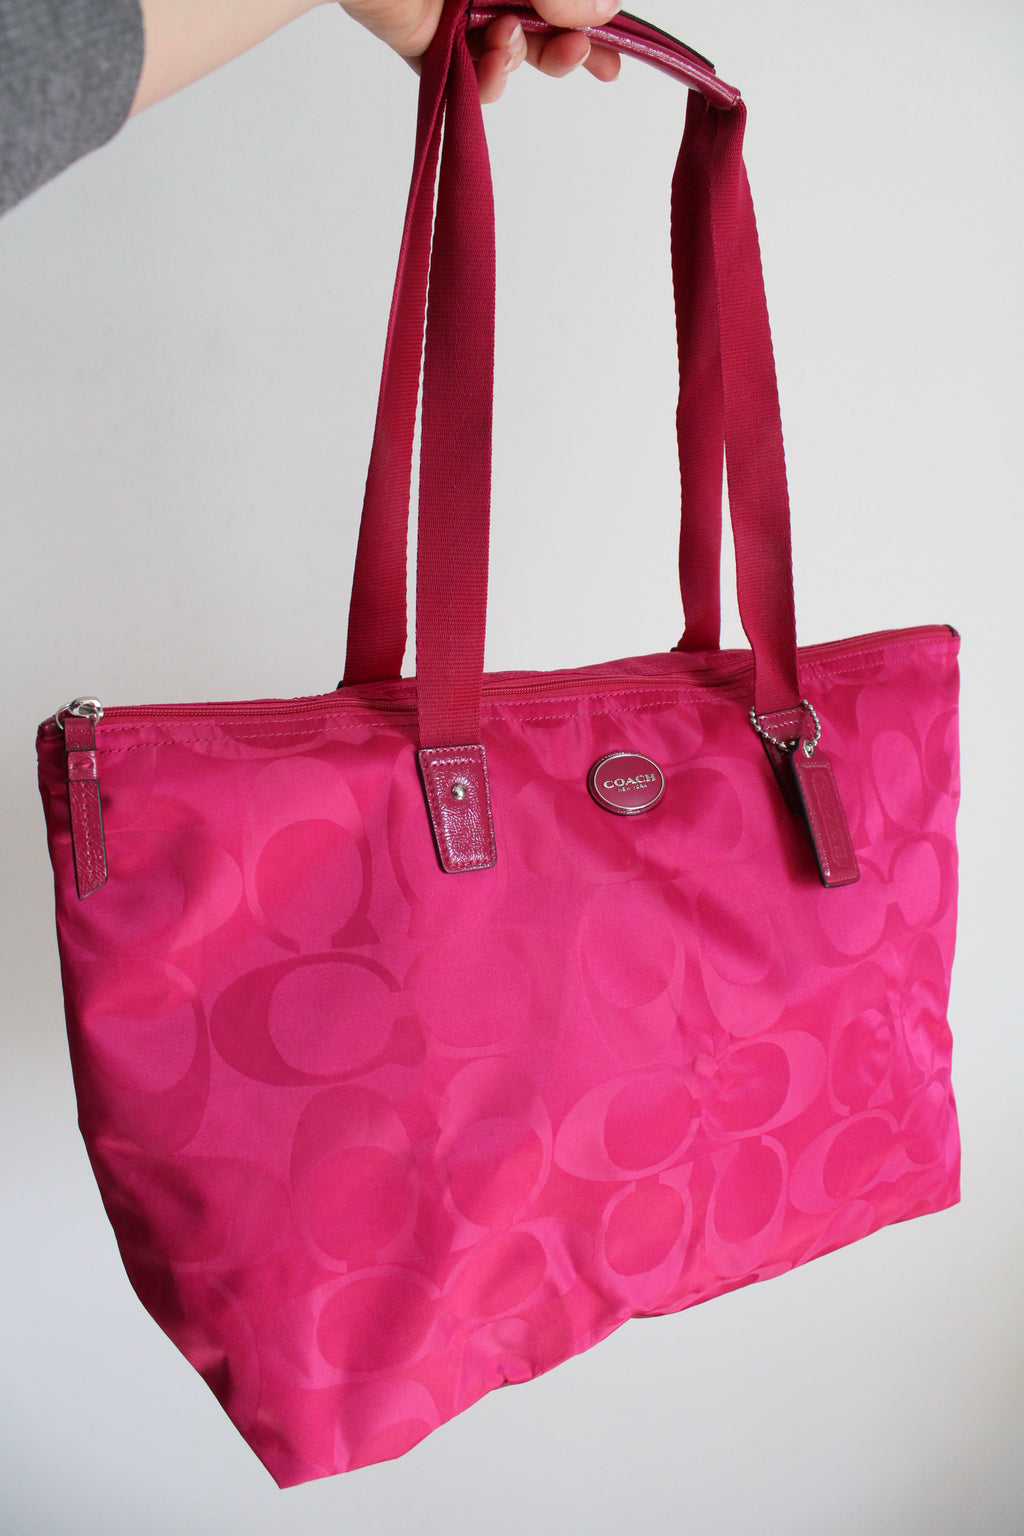 Coach Signature Pink Satin Monogram Pattern Shopper Shoulder Tote Bag & Pouch